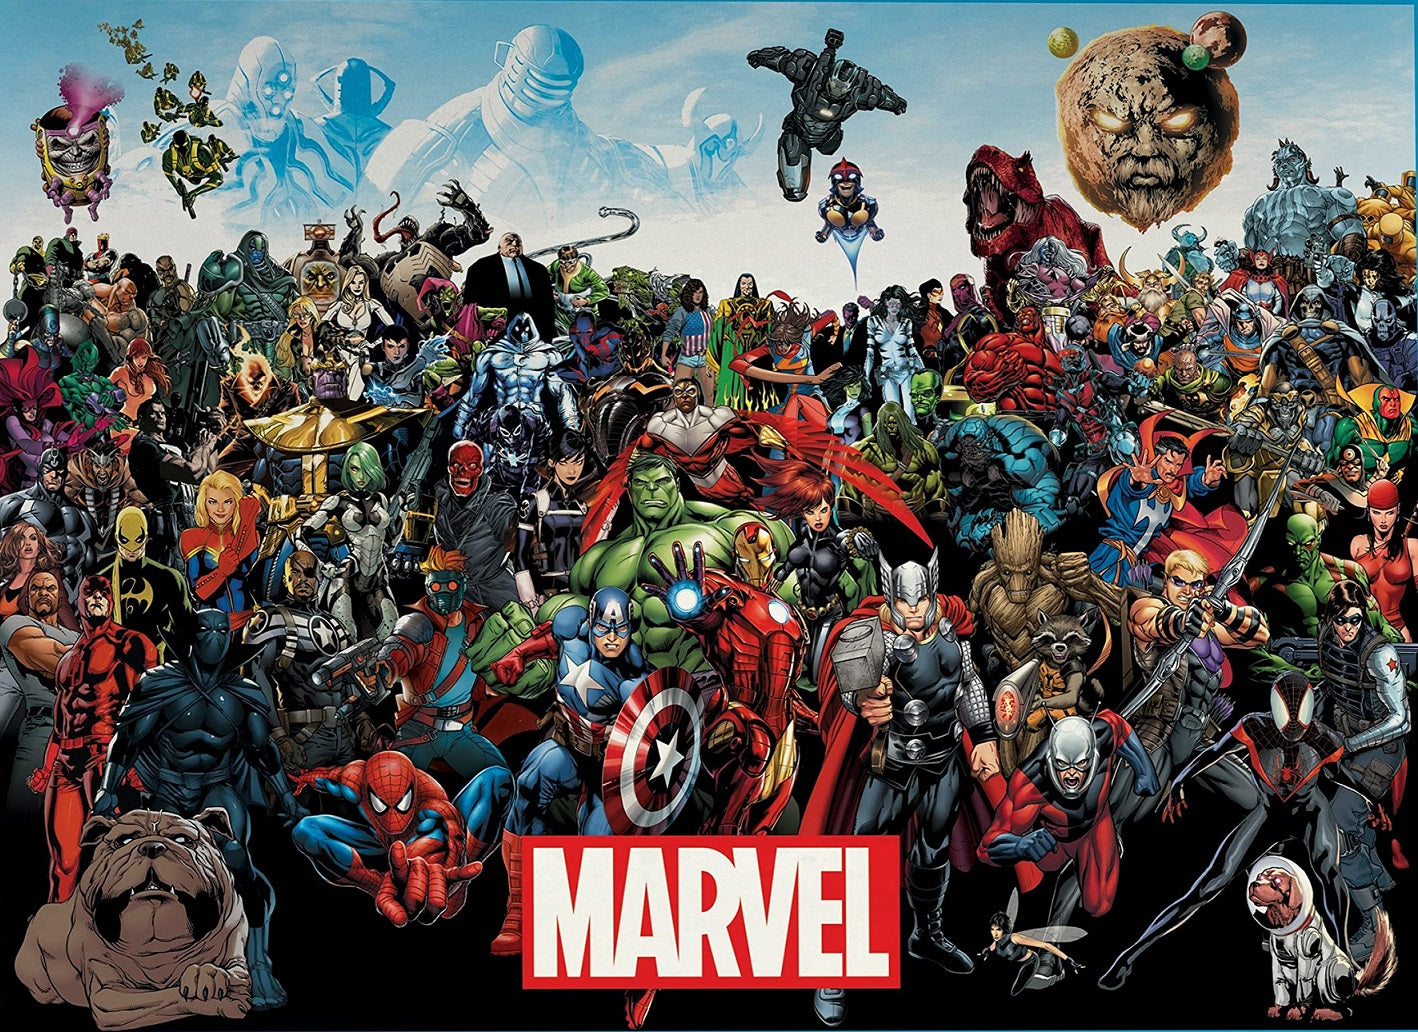 Marvel, 3000 brikker puslespil